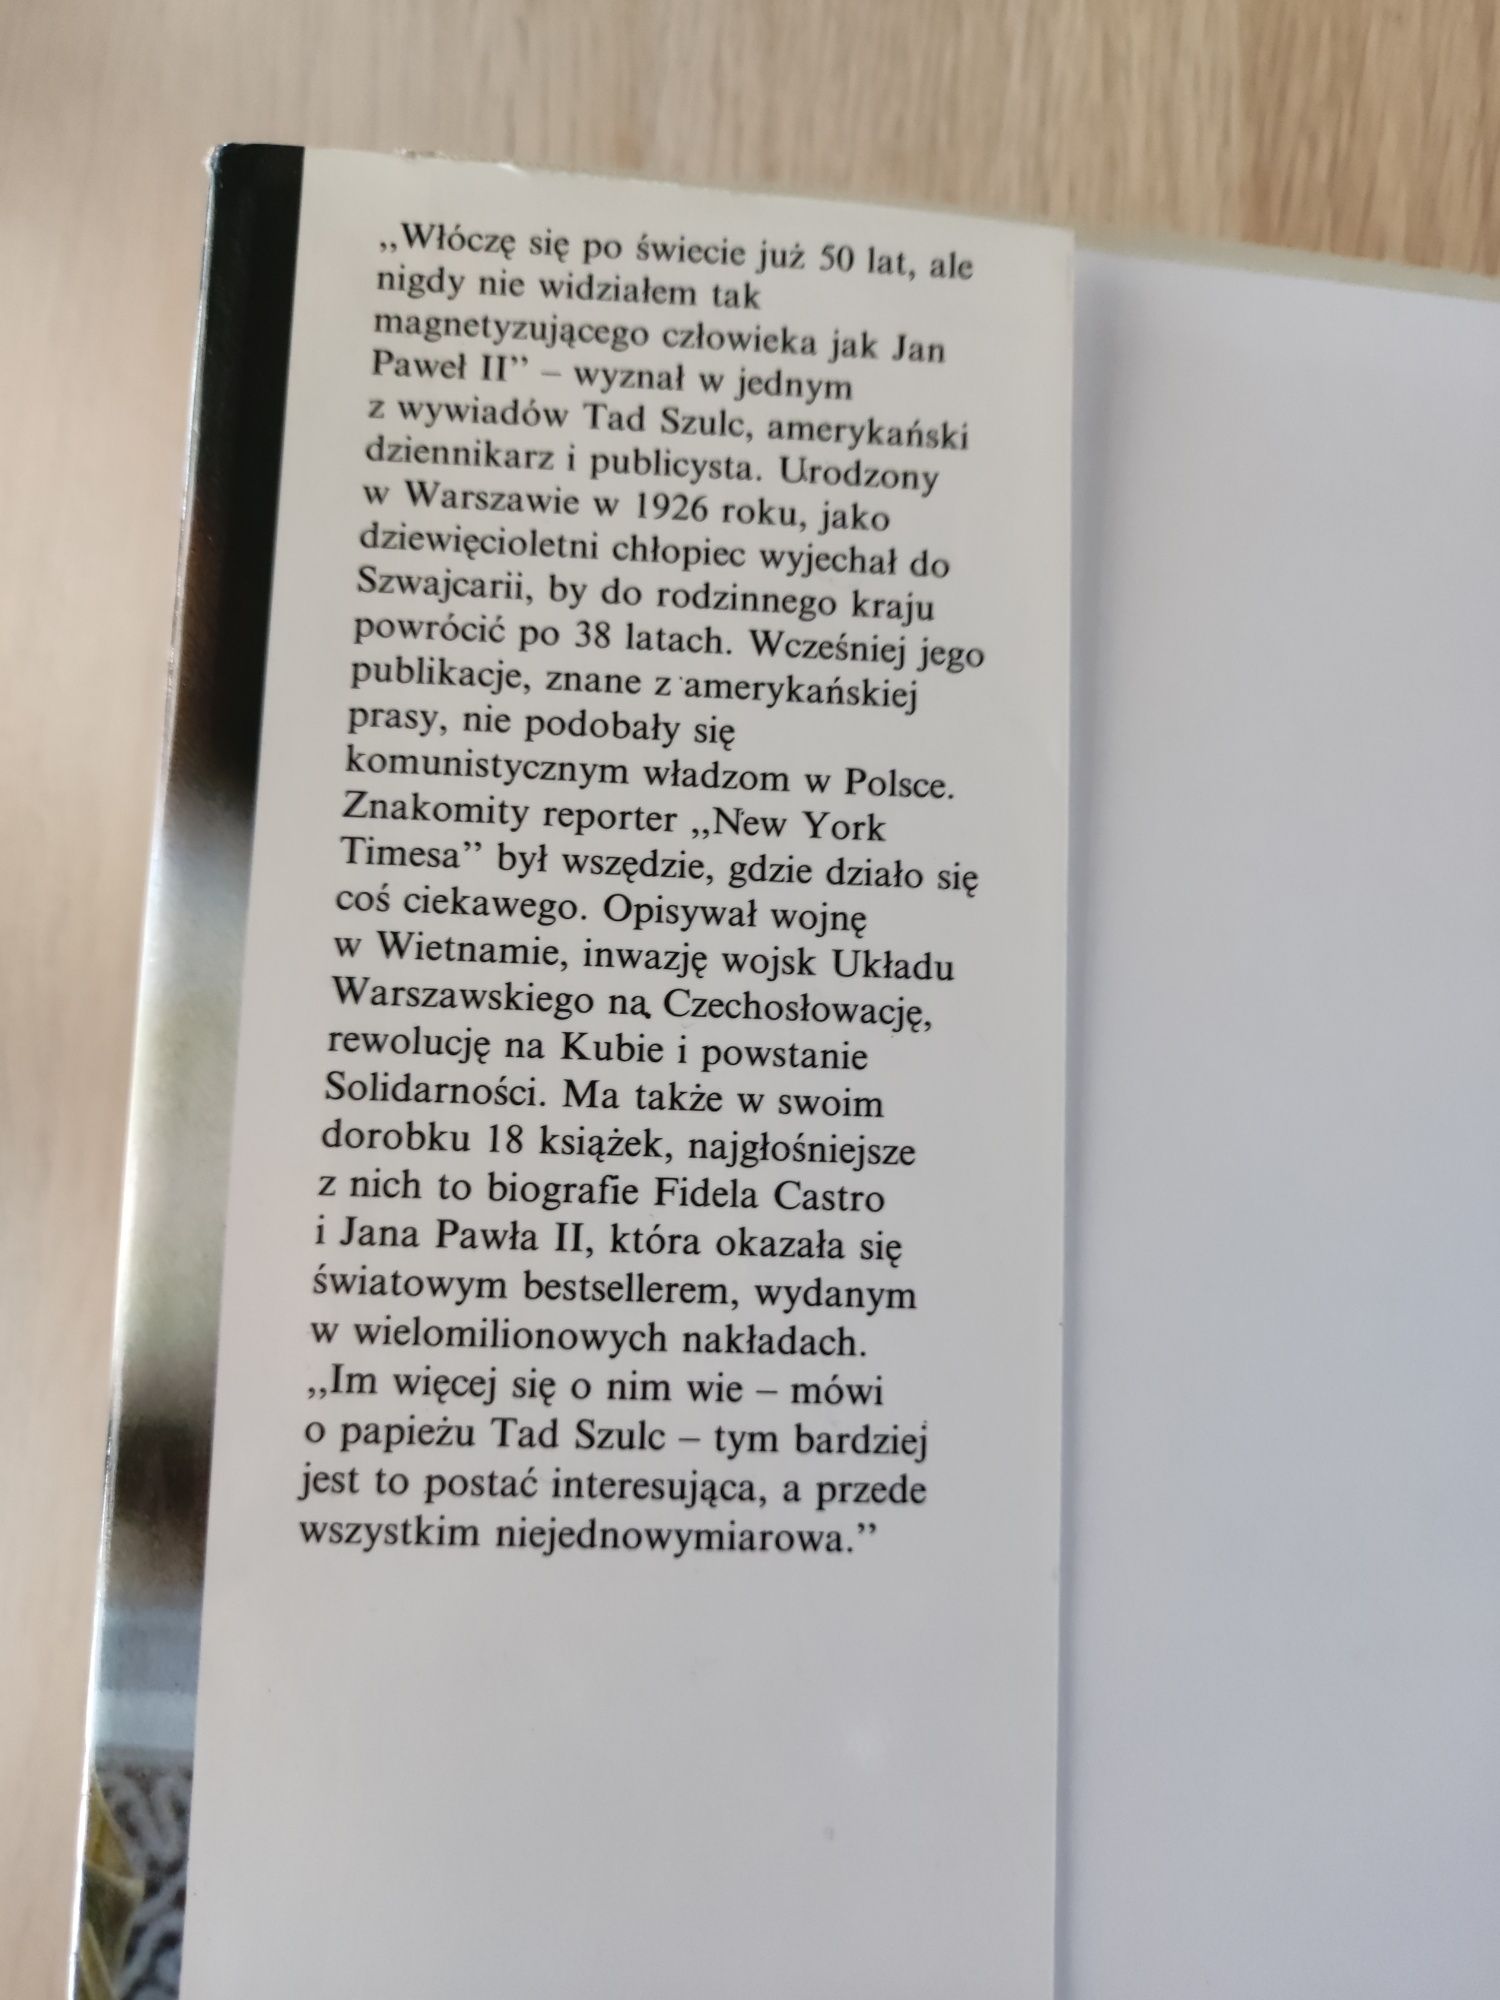 Książka "Jan Paweł II" Tad Szulc